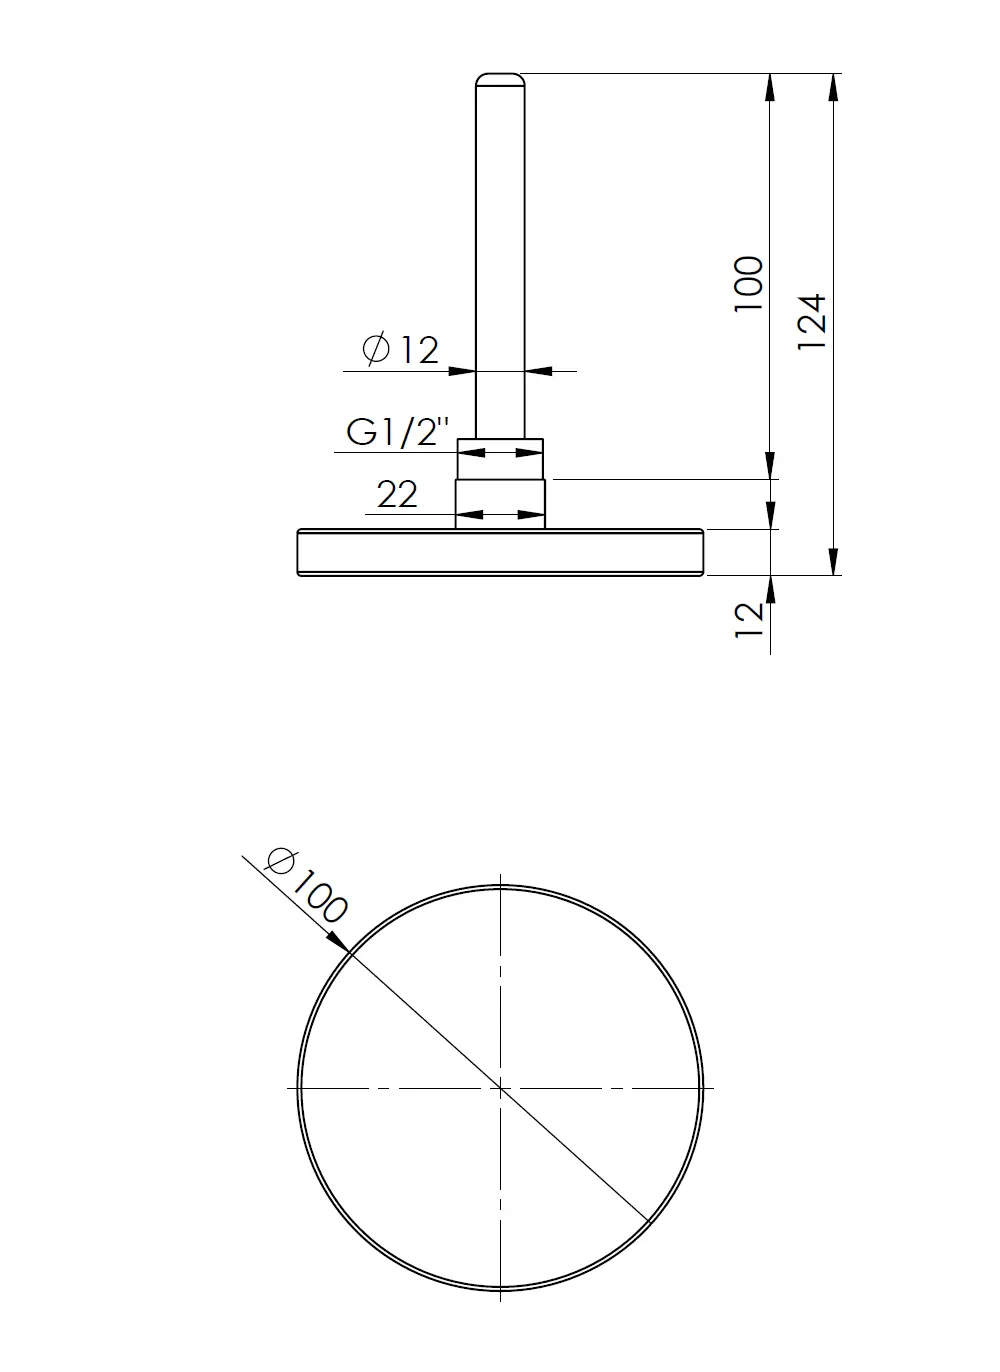 Termometr bimetaliczny BiTh 100, fi100 mm, 0÷60°C, L 100 mm, G1/2", ax, kl. 2 - budowa